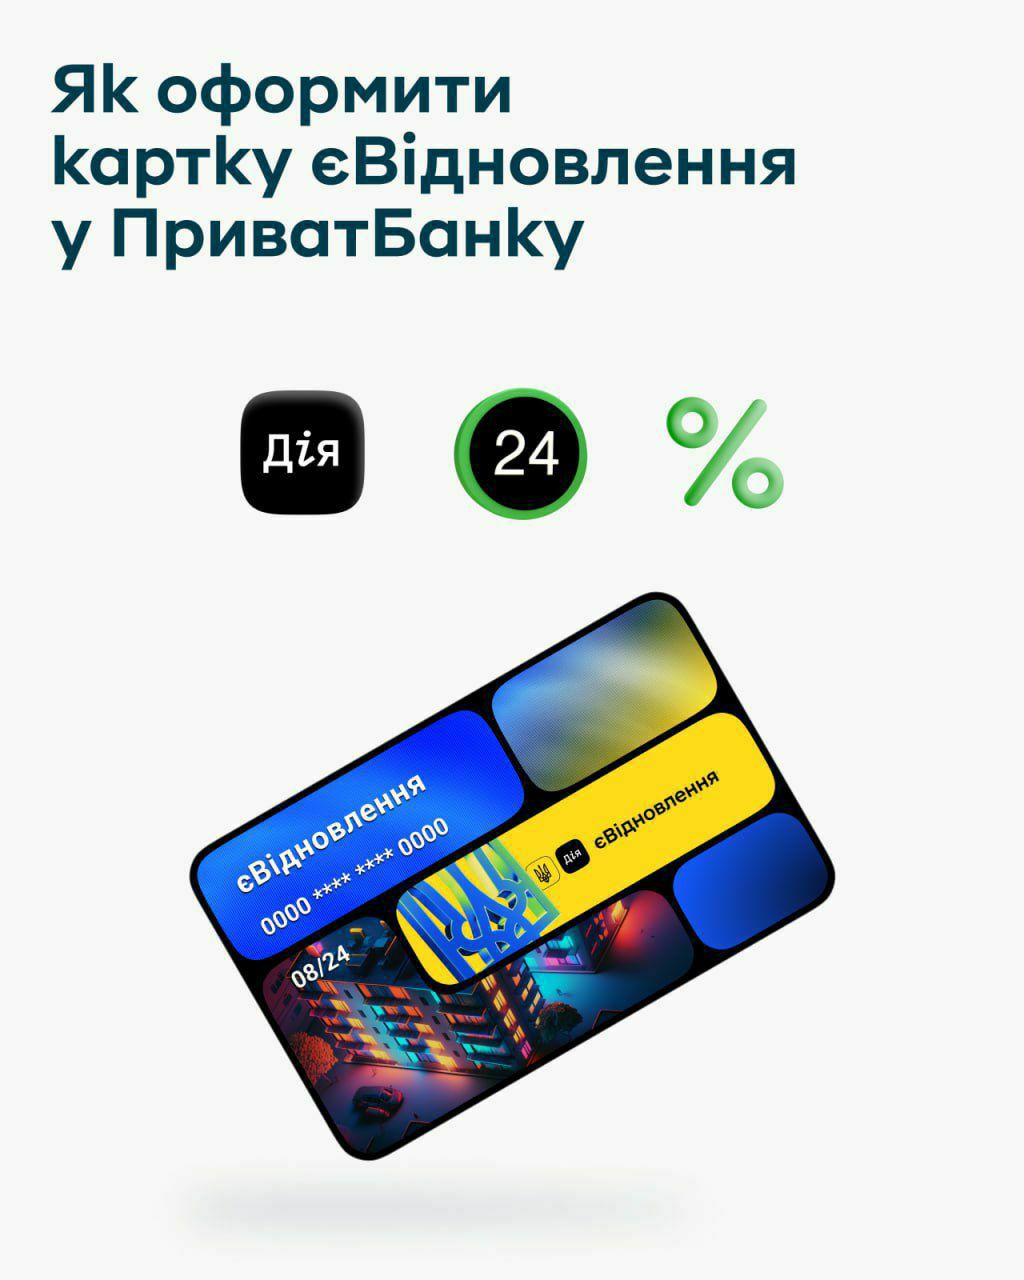 65% українців, житло яких було пошкоджено внаслідок війни, для зарахування держвиплати обирають картки єВідновлення від ПриватБанку